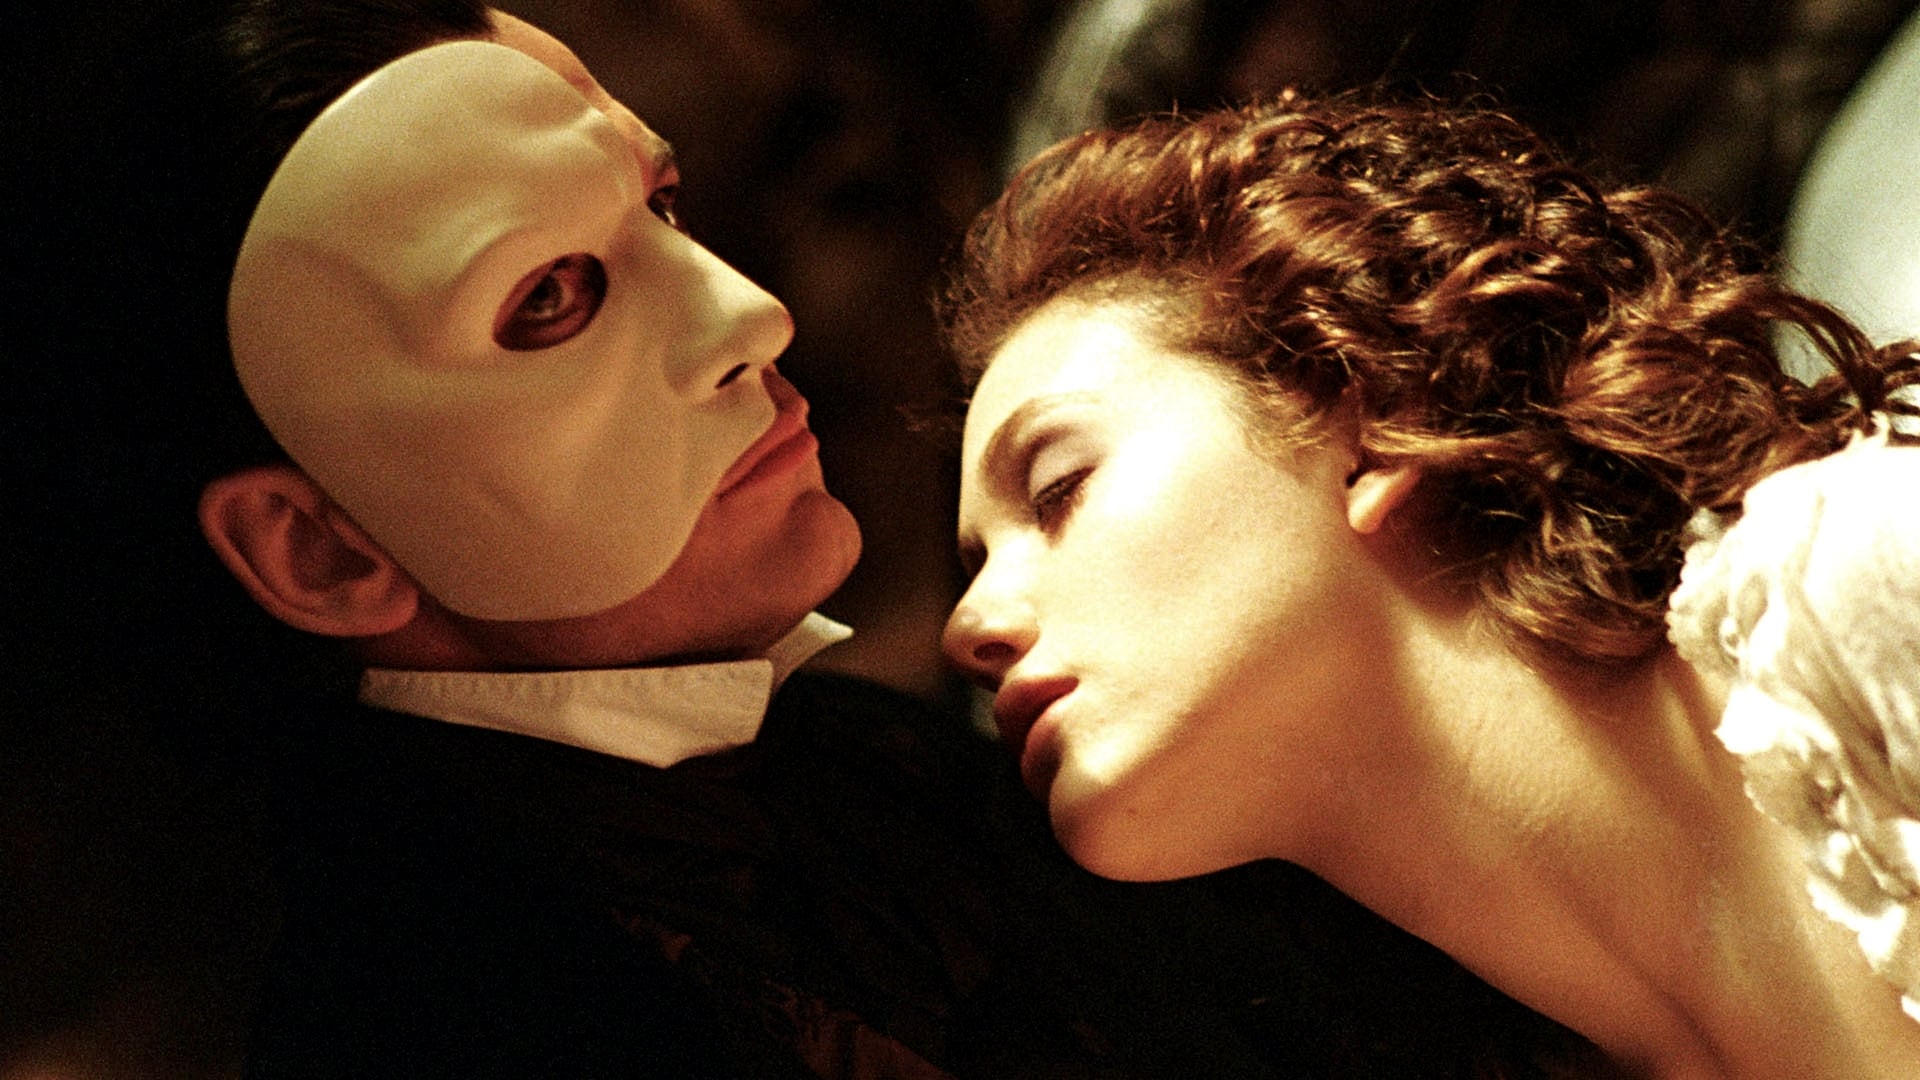 phantom of the opera movie scenes